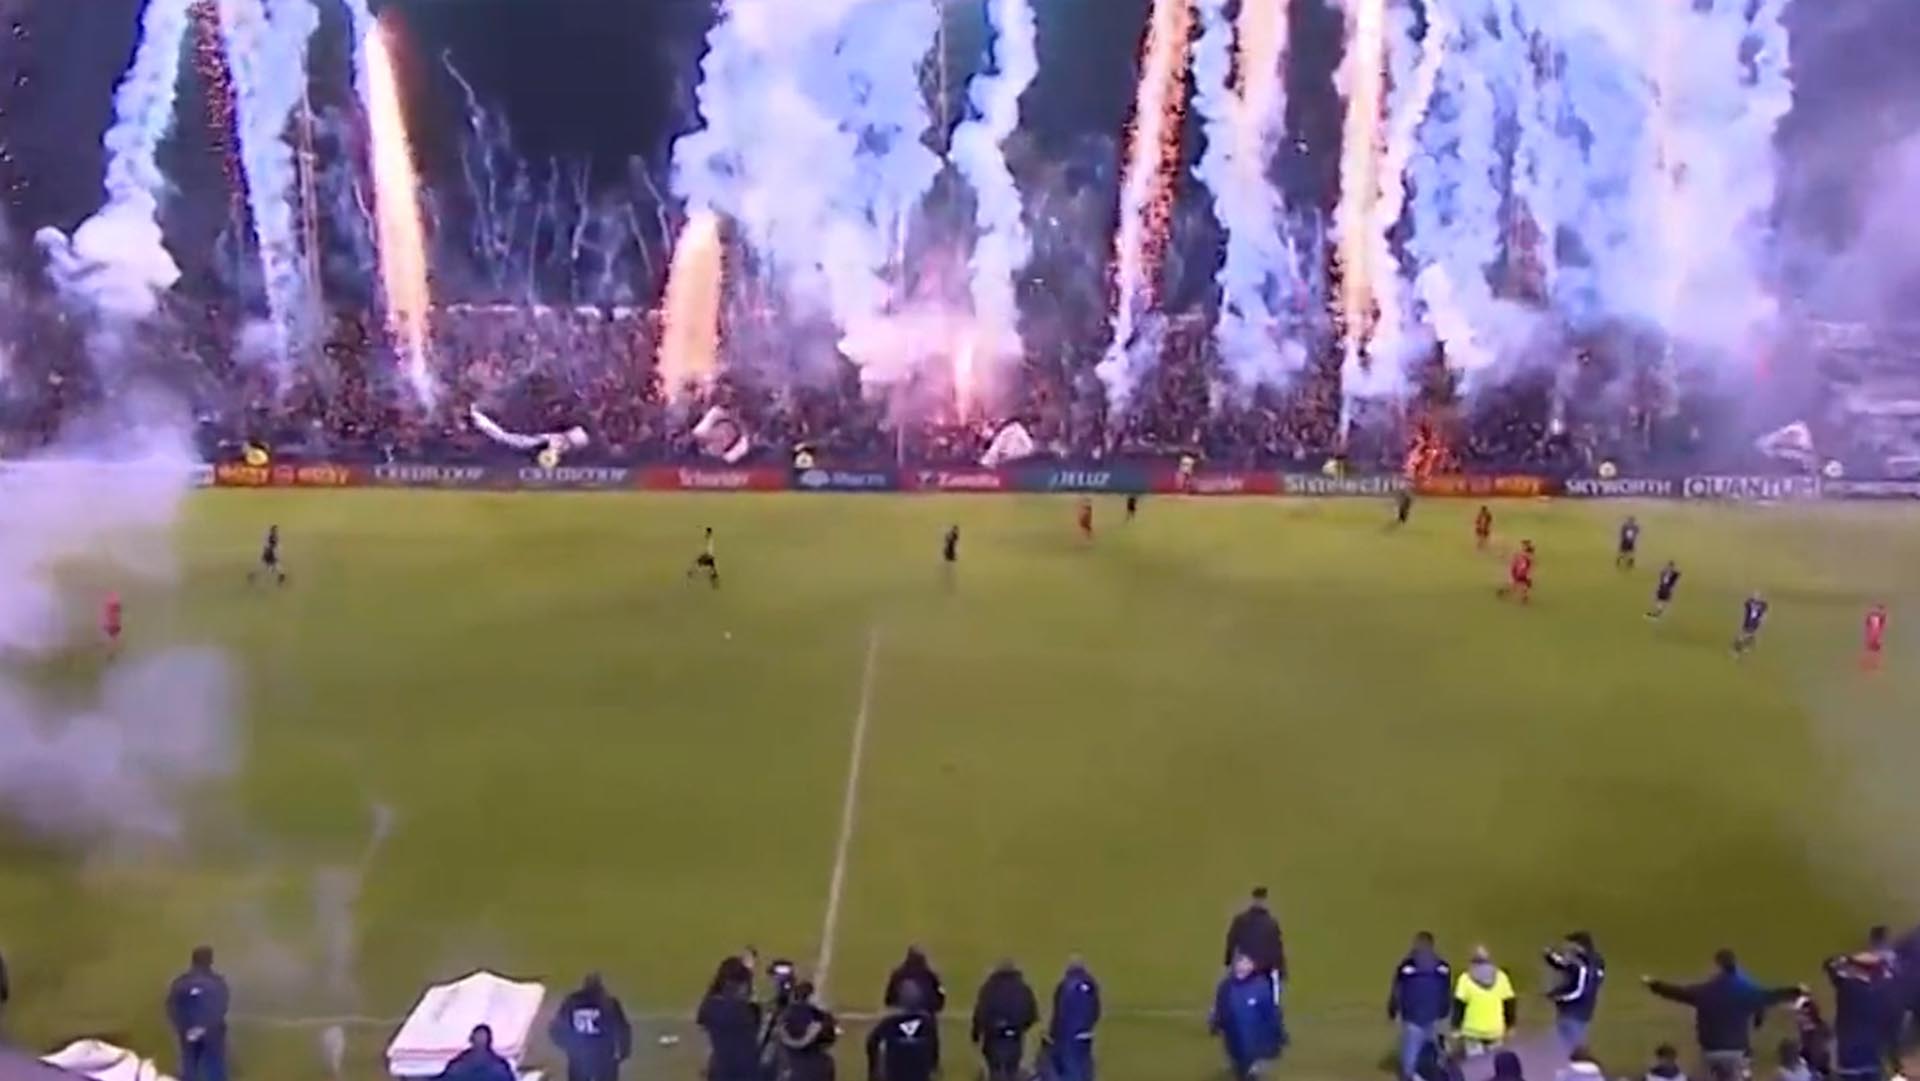 La impactante imagen del ascenso argentino que recorrió el mundo: explosión de fuegos artificiales antes del final del partido